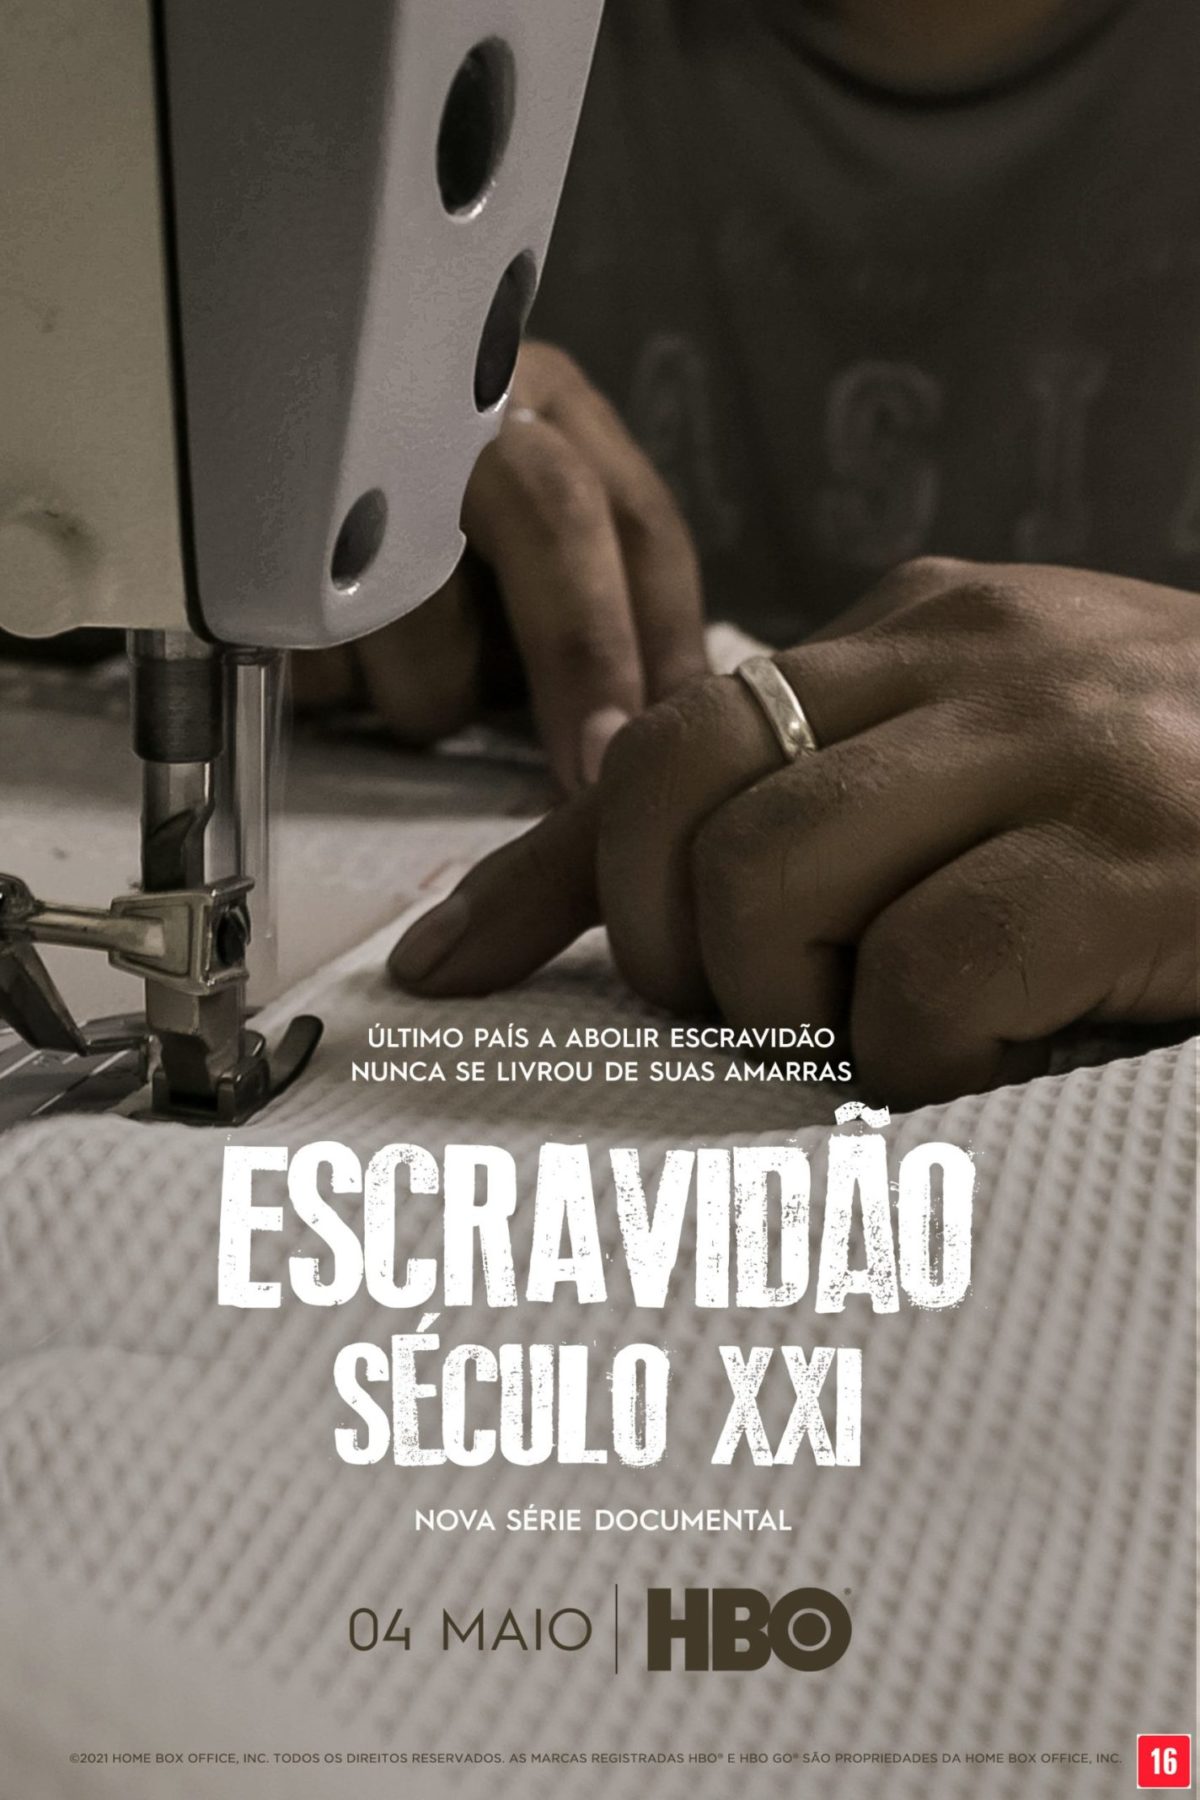 Poster de divulgação da série documental Escravidão - Século XXI, de Bruno Barreto / Reprodução